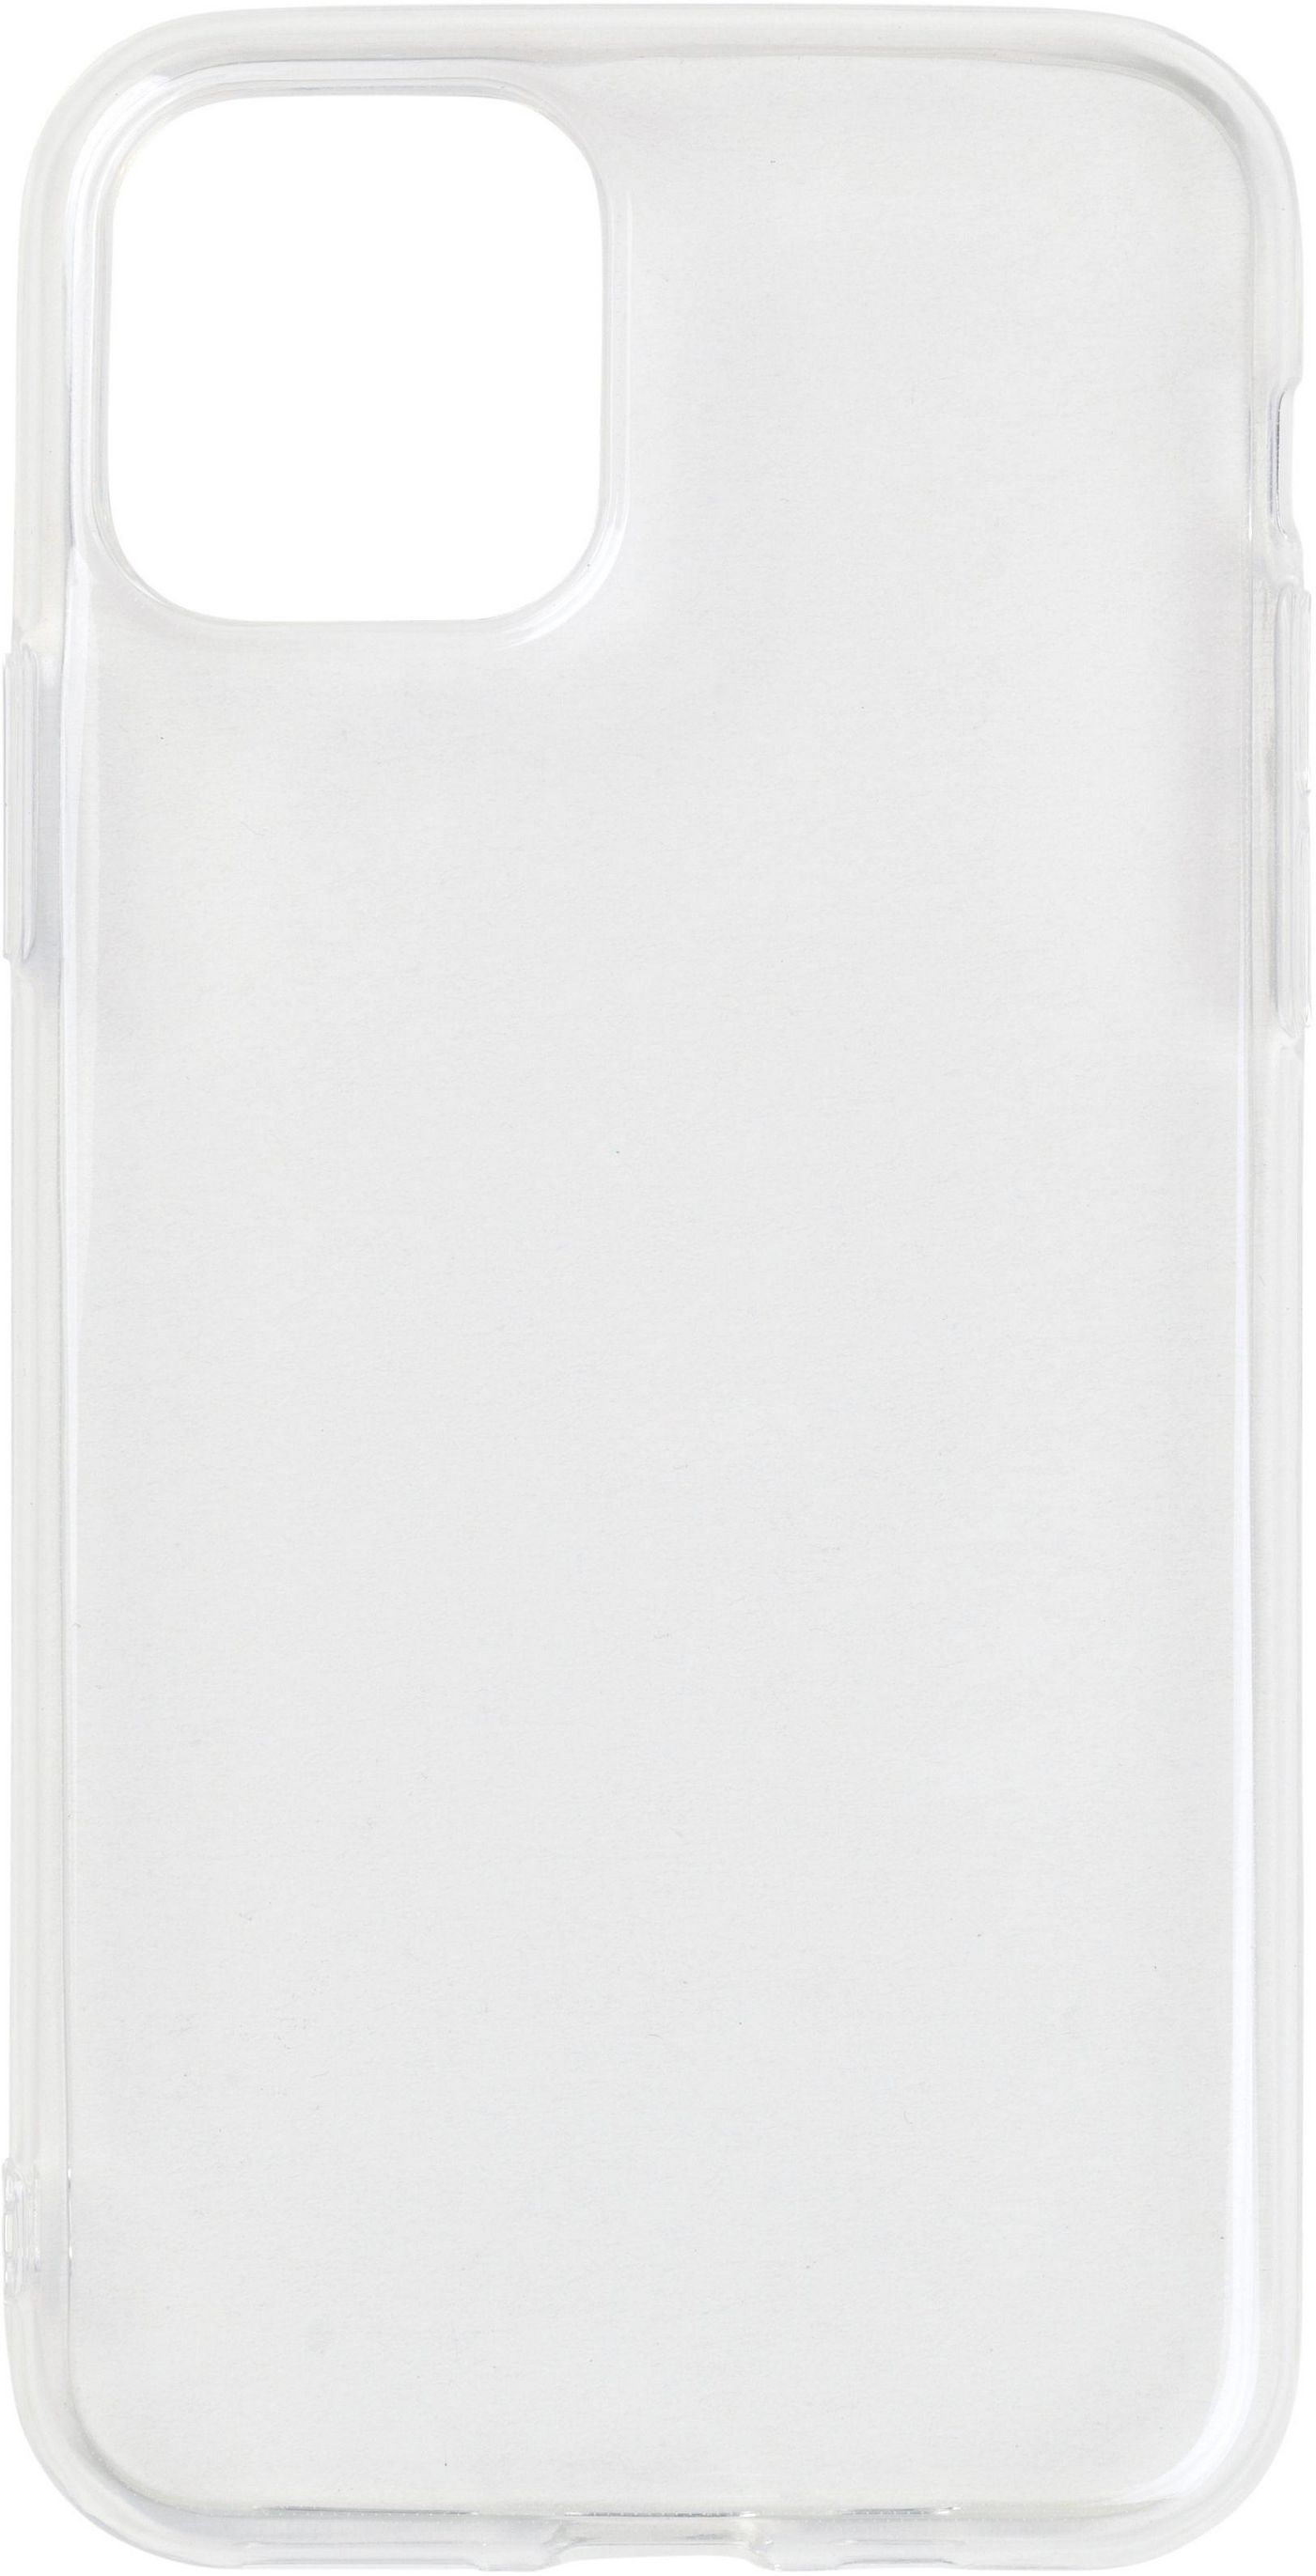 iPhone 11 Pro Soft Case Clear Ultra-slim